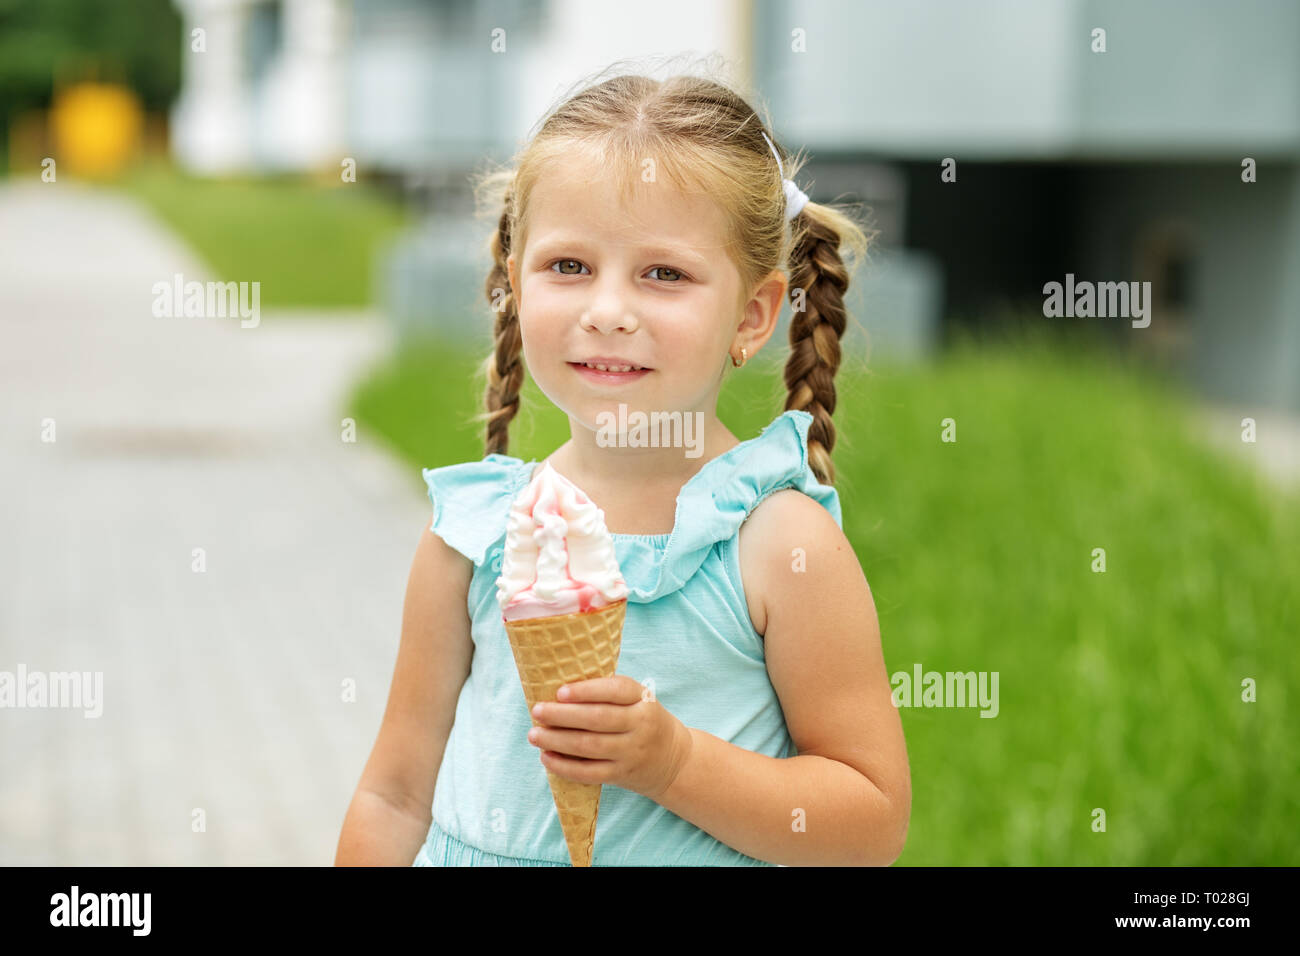 Capretto piccolo ragazza con gelato. Il concetto di infanzia, stile di vita, cibo, estate Foto Stock